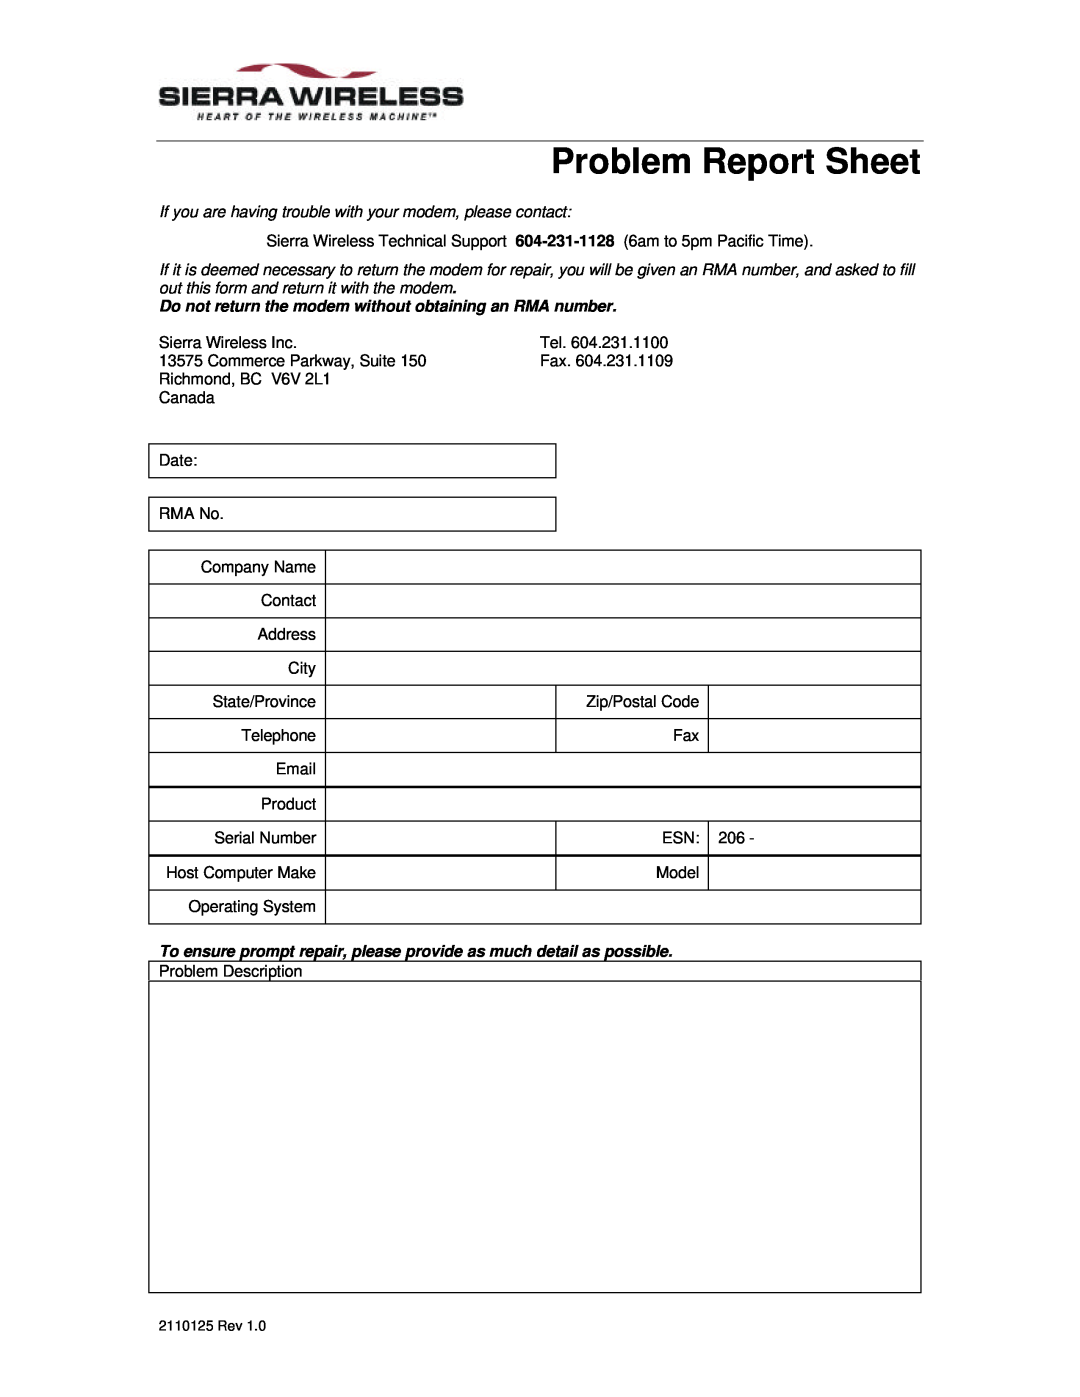 Sierra Wireless 350 specifications Problem Report Sheet 